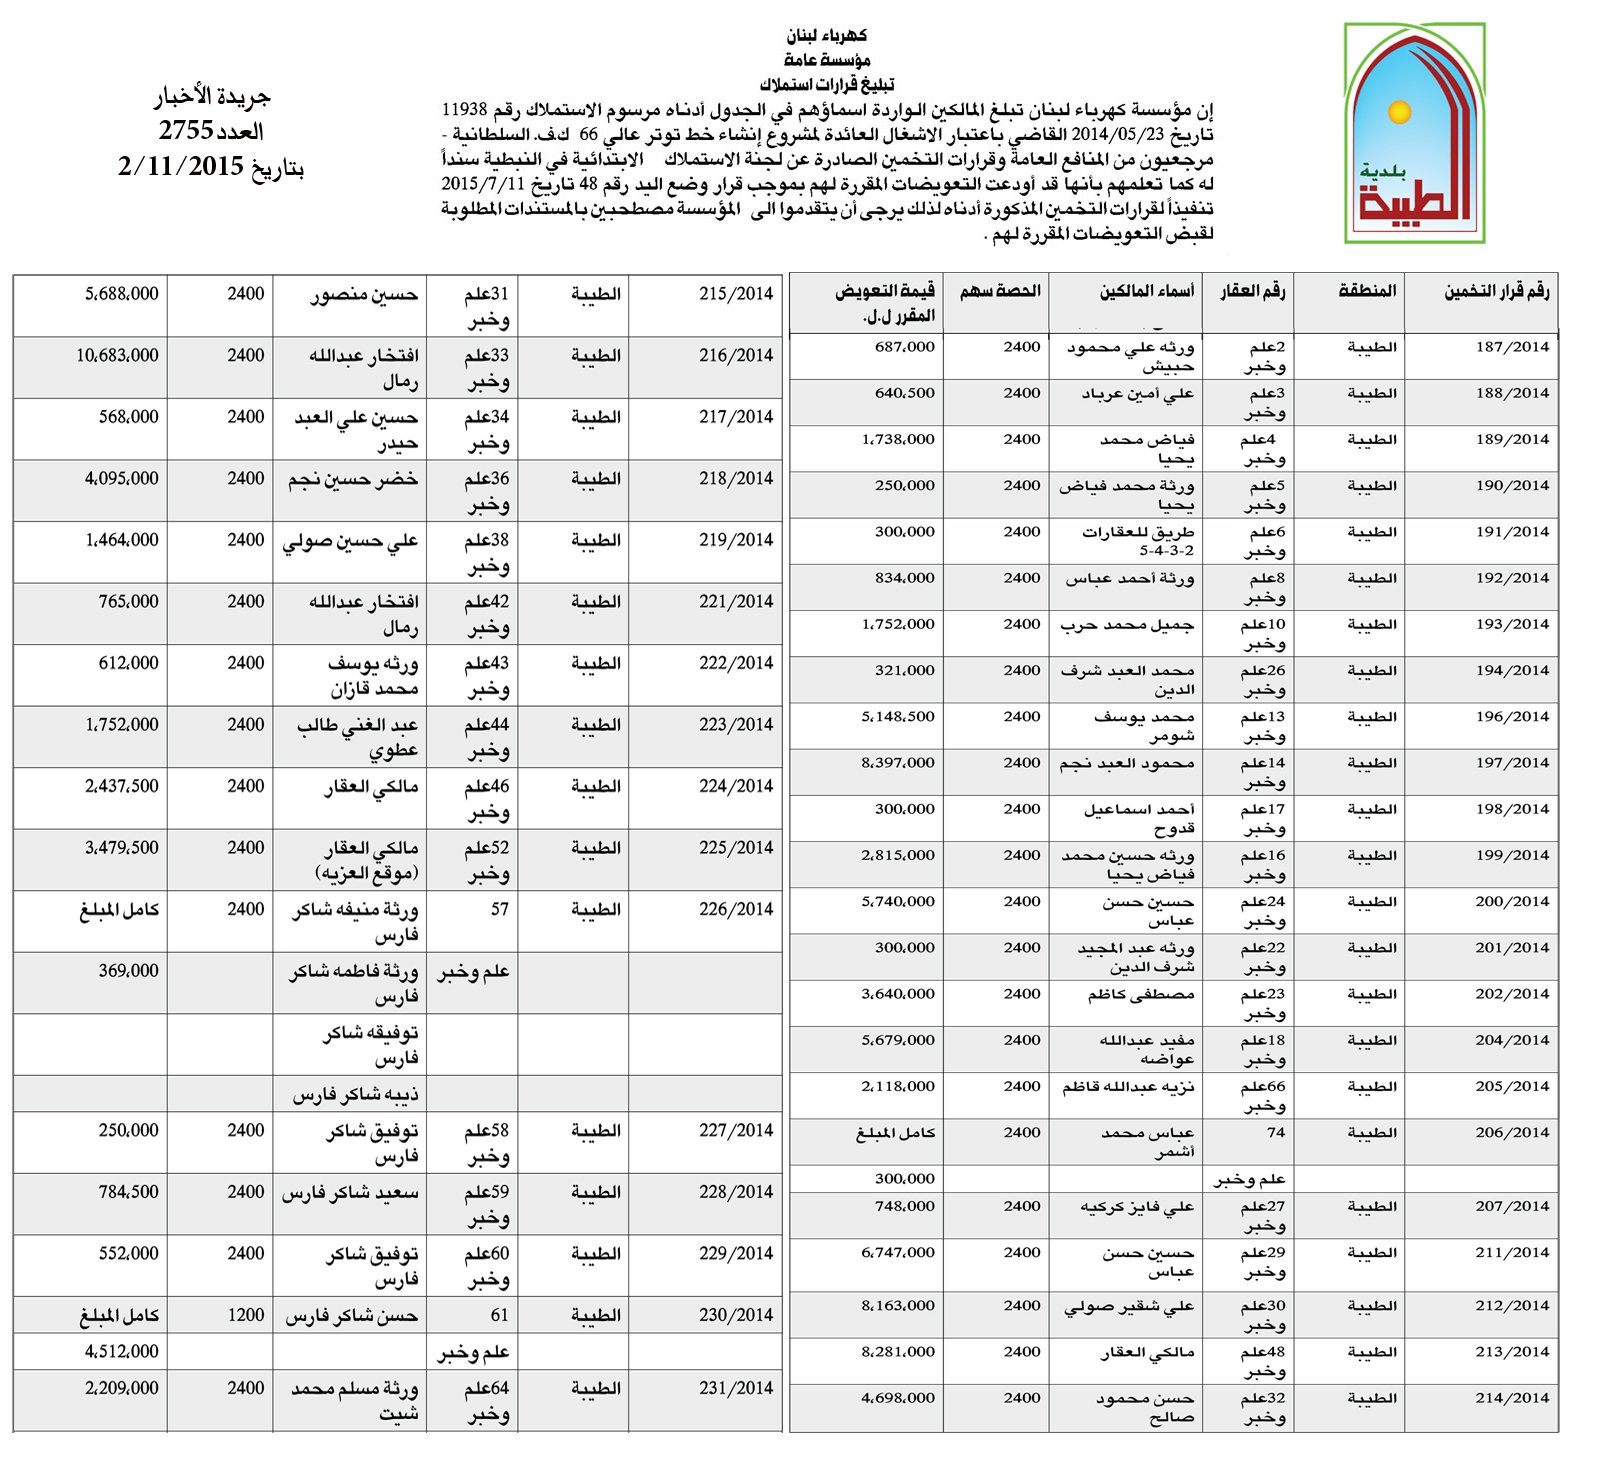 بلدية الطيبة تنشر أسماء المستفيدين من خط الاستملاك (التوتر العالي) لقبض تعويضاتهم من مؤسسة كهرباء لبنان